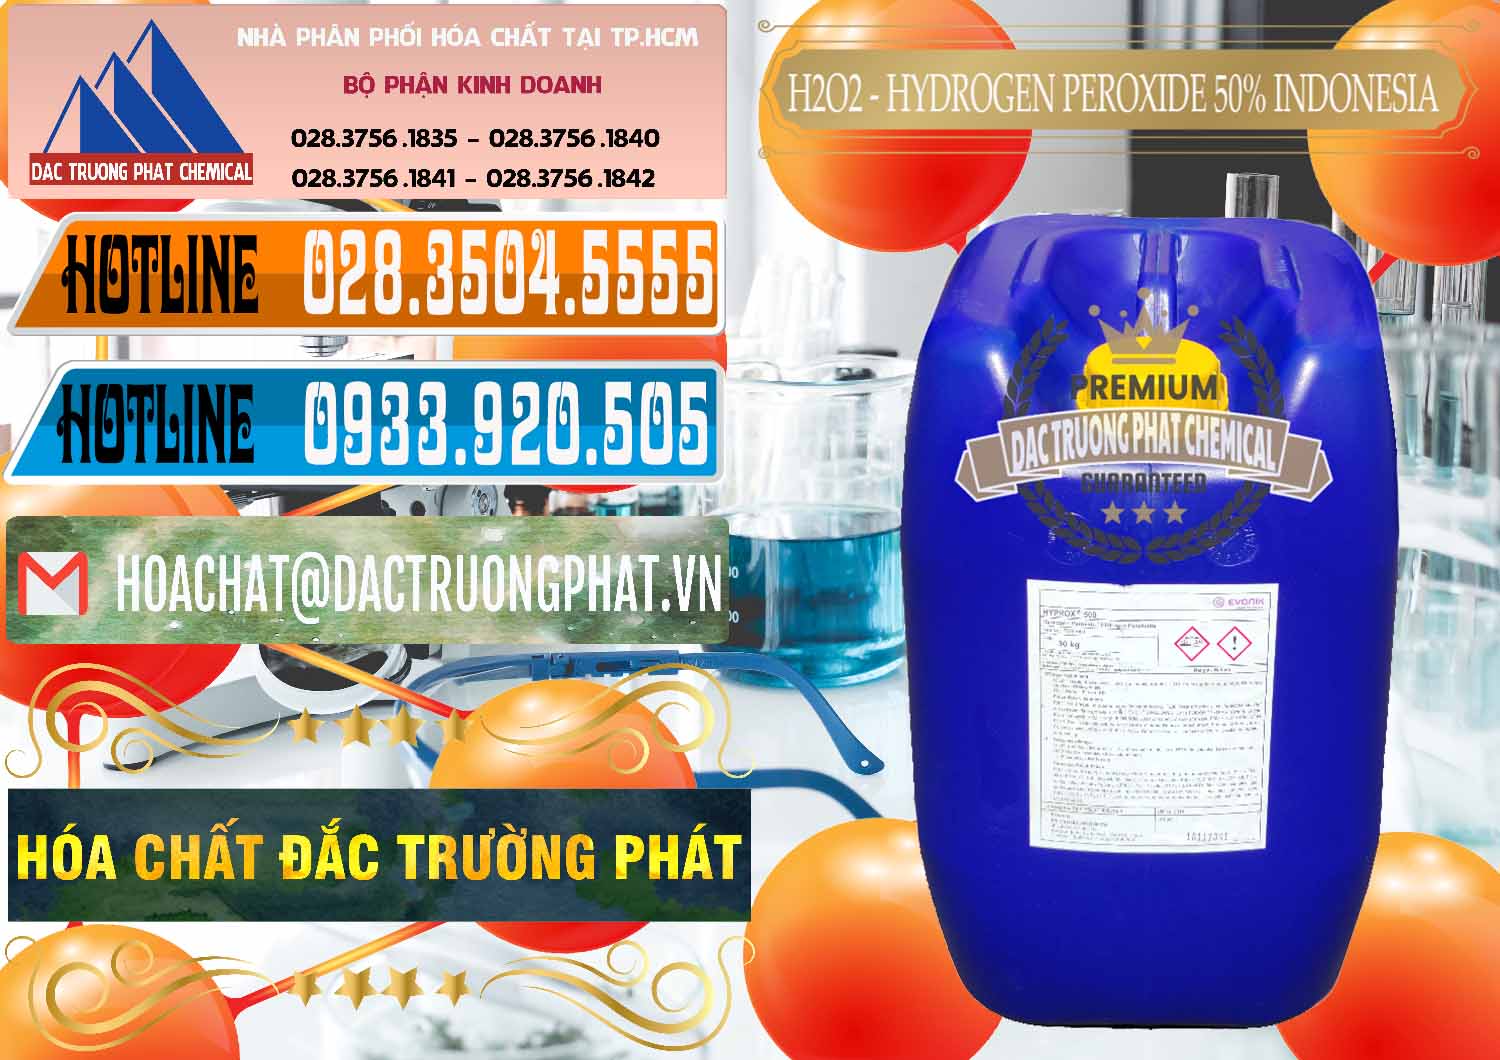 Phân phối & bán H2O2 - Hydrogen Peroxide 50% Evonik Indonesia - 0070 - Cty kinh doanh - cung cấp hóa chất tại TP.HCM - stmp.net